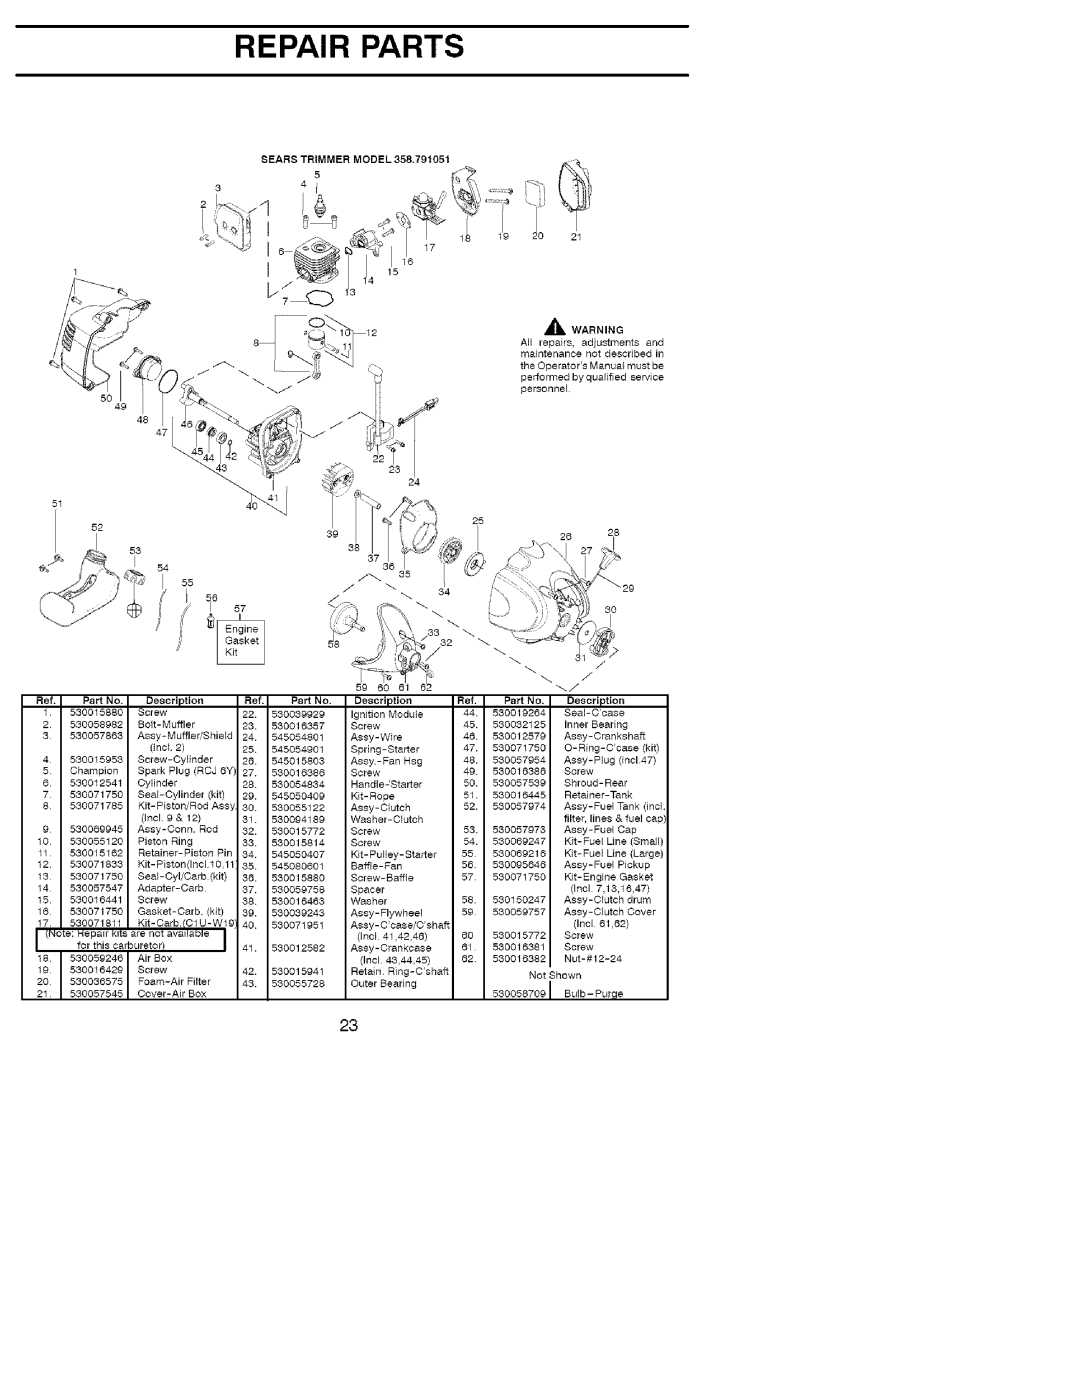 Craftsman 358.791051 manual f :5, Repair Parts, j tl4 t5 